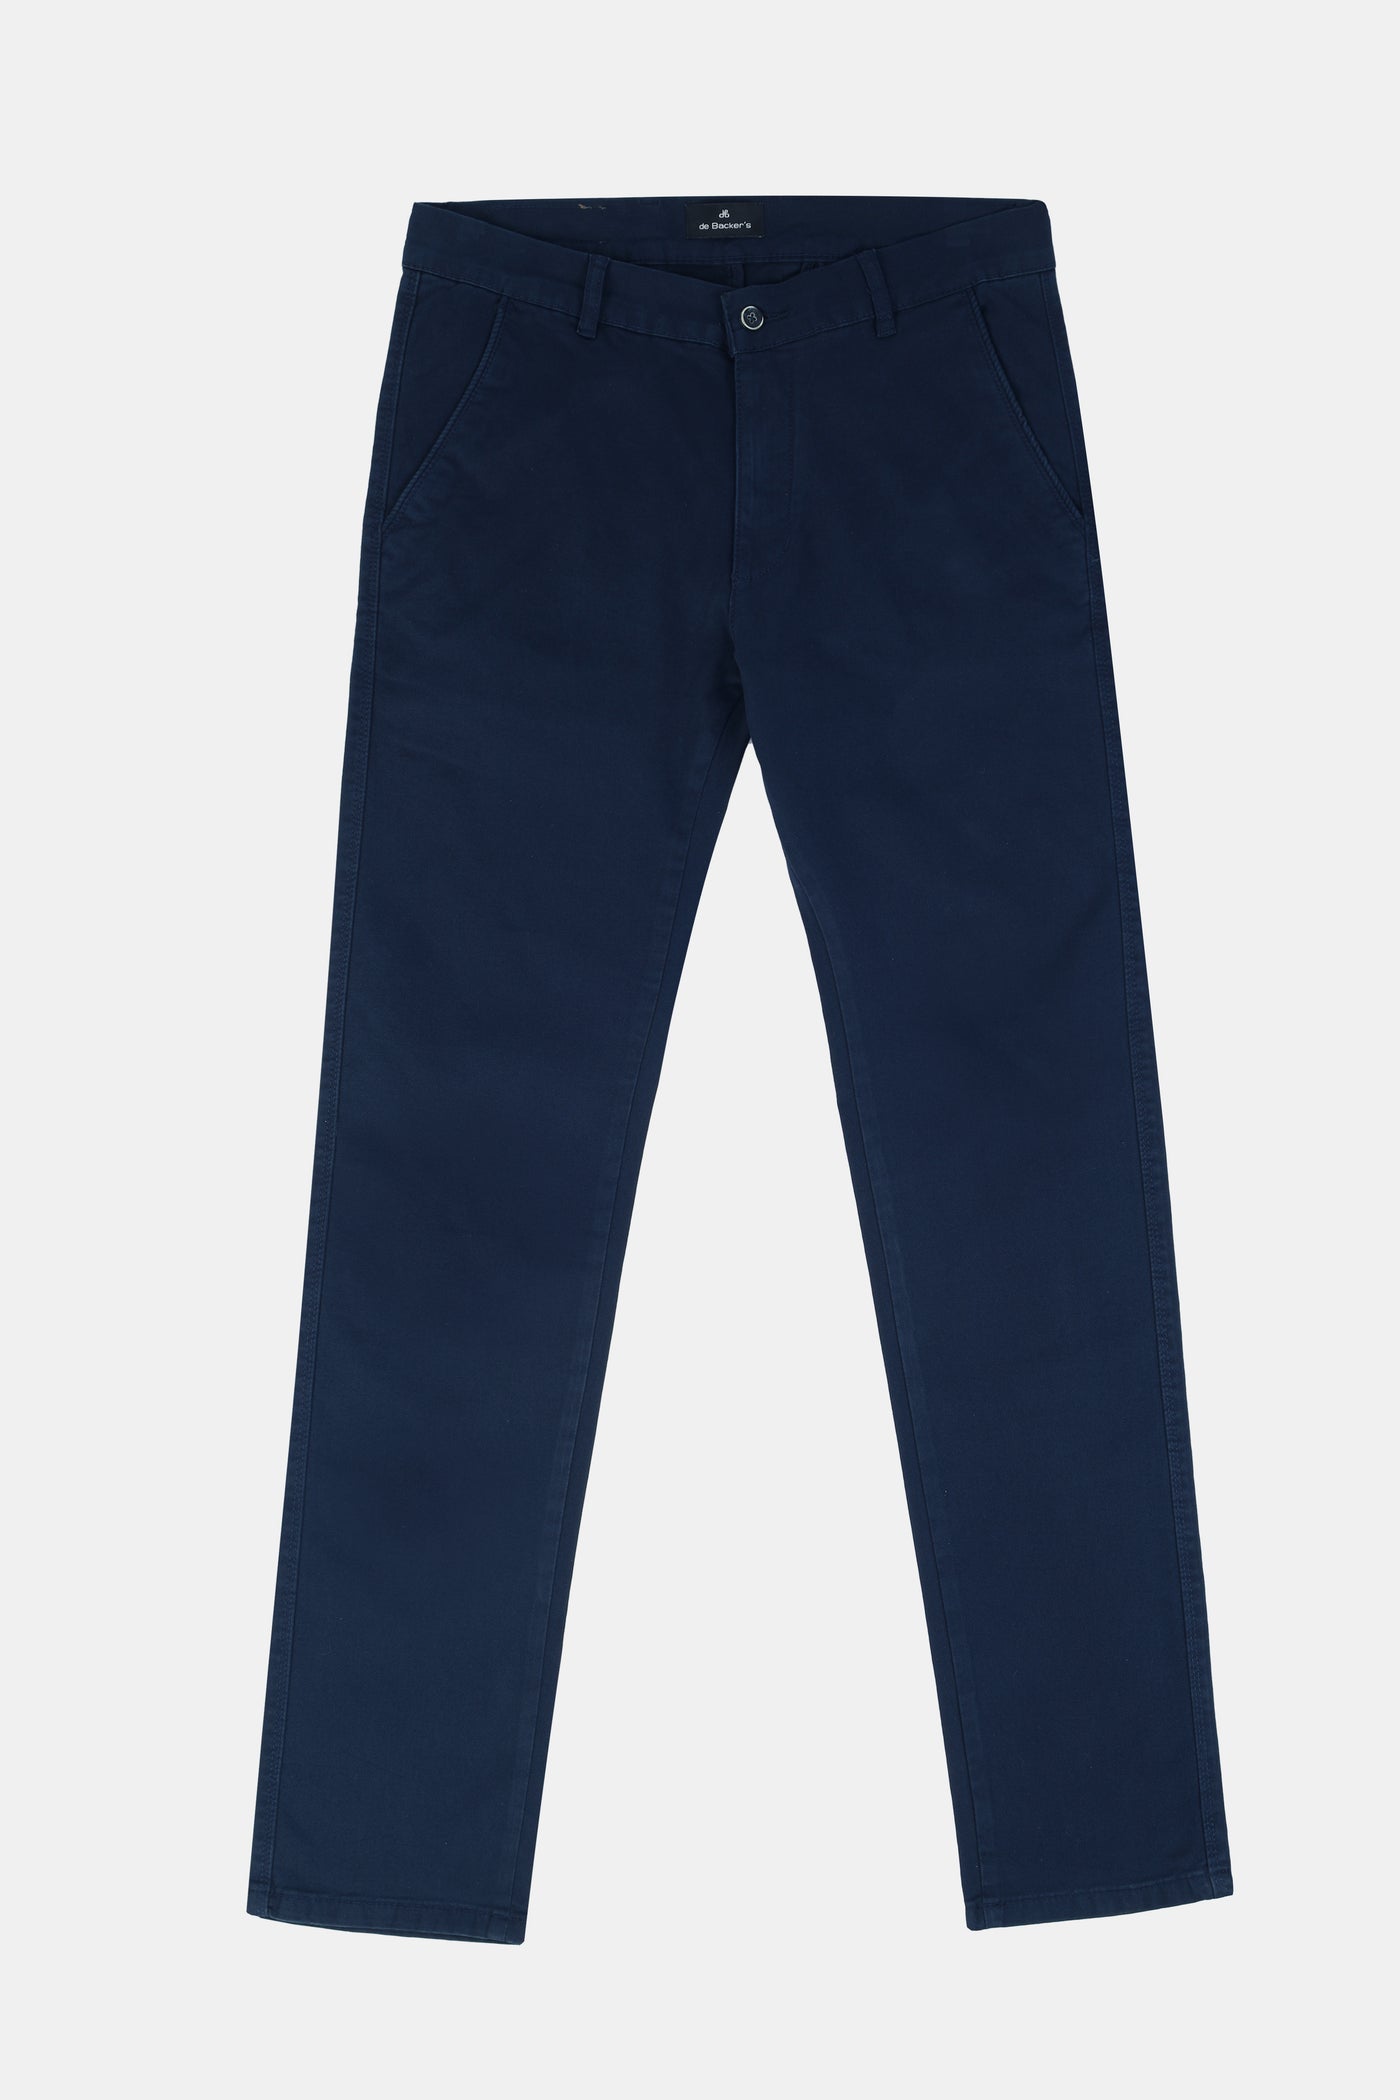 Chino Twill Oxford Blue Slim  Pant